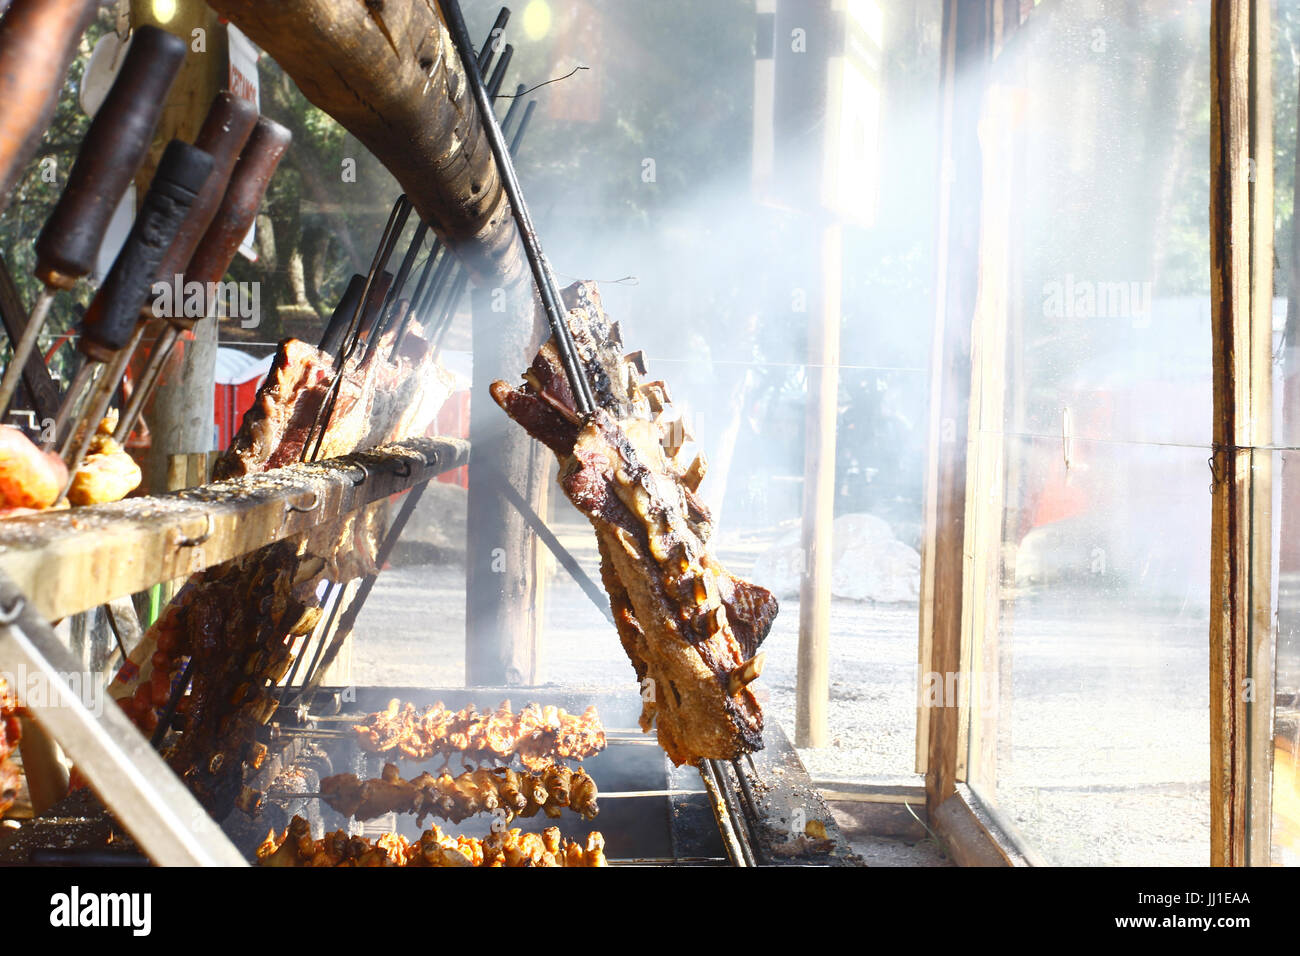 Barbecue grill,, Porto Alegre, Rio Grande do Sul, Brazil Stock Photo